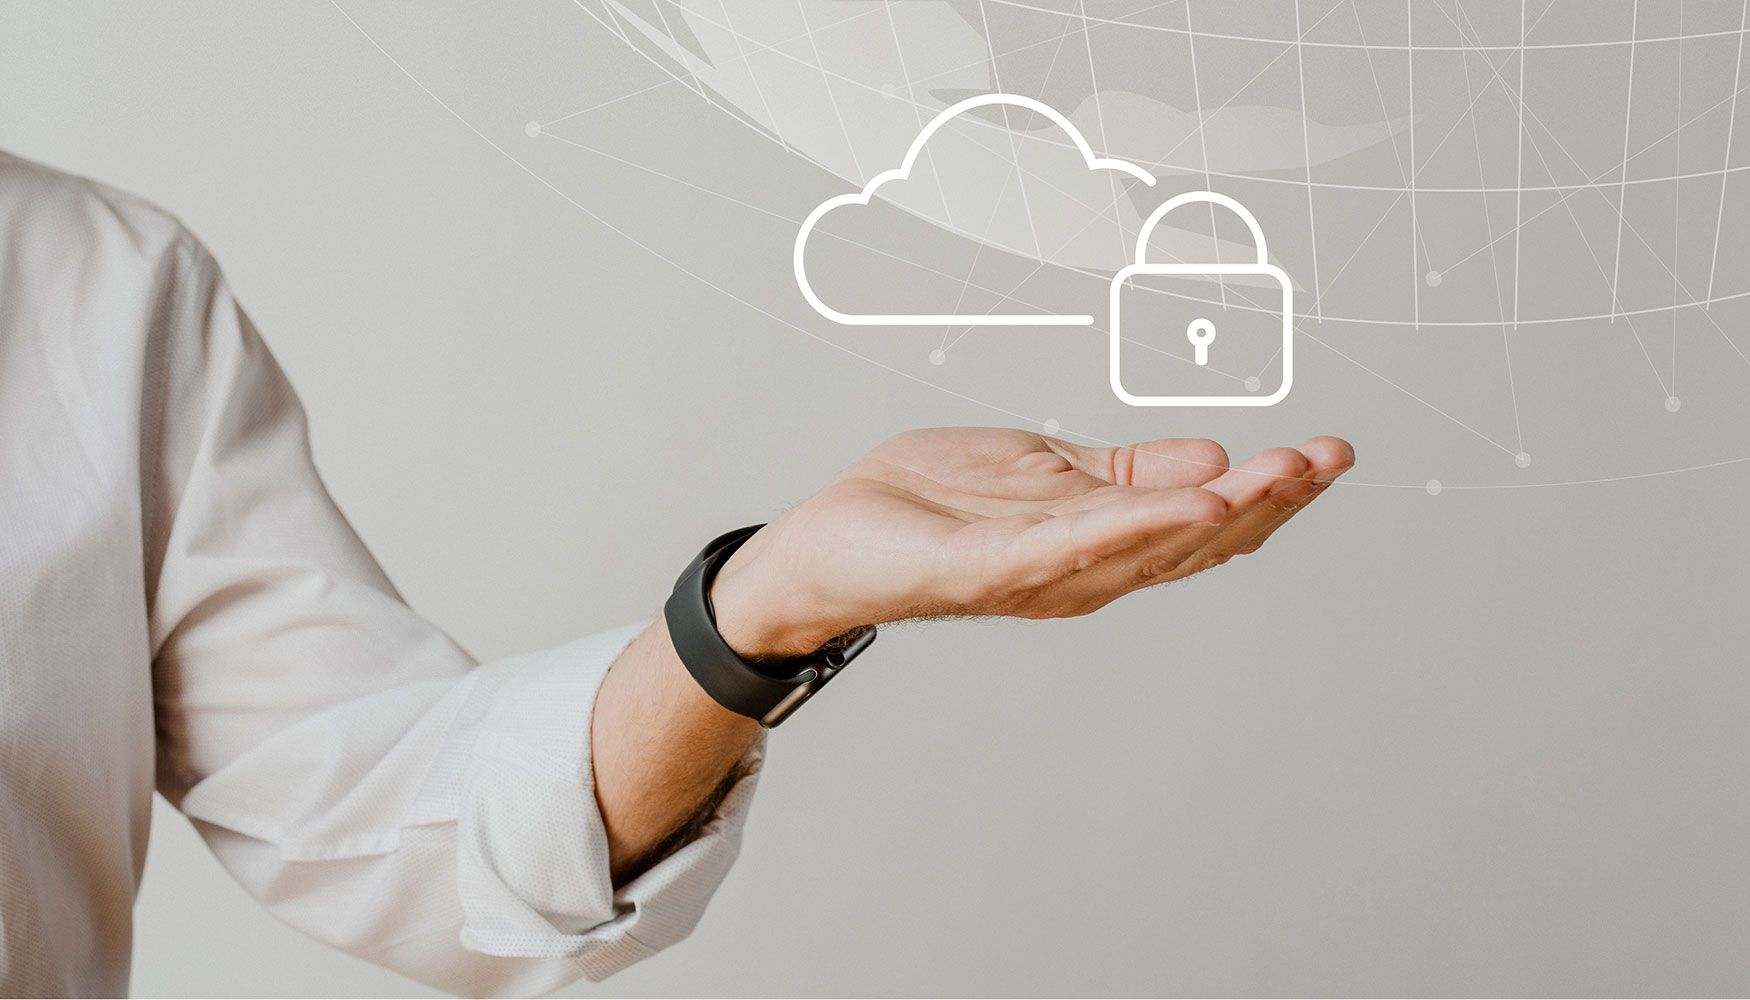 El Cloud pblico sigue creciendo a buen ritmo, y la seguridad y privacidad de los datos cobra cada vez ms protagonismo en las estrategias digitales...